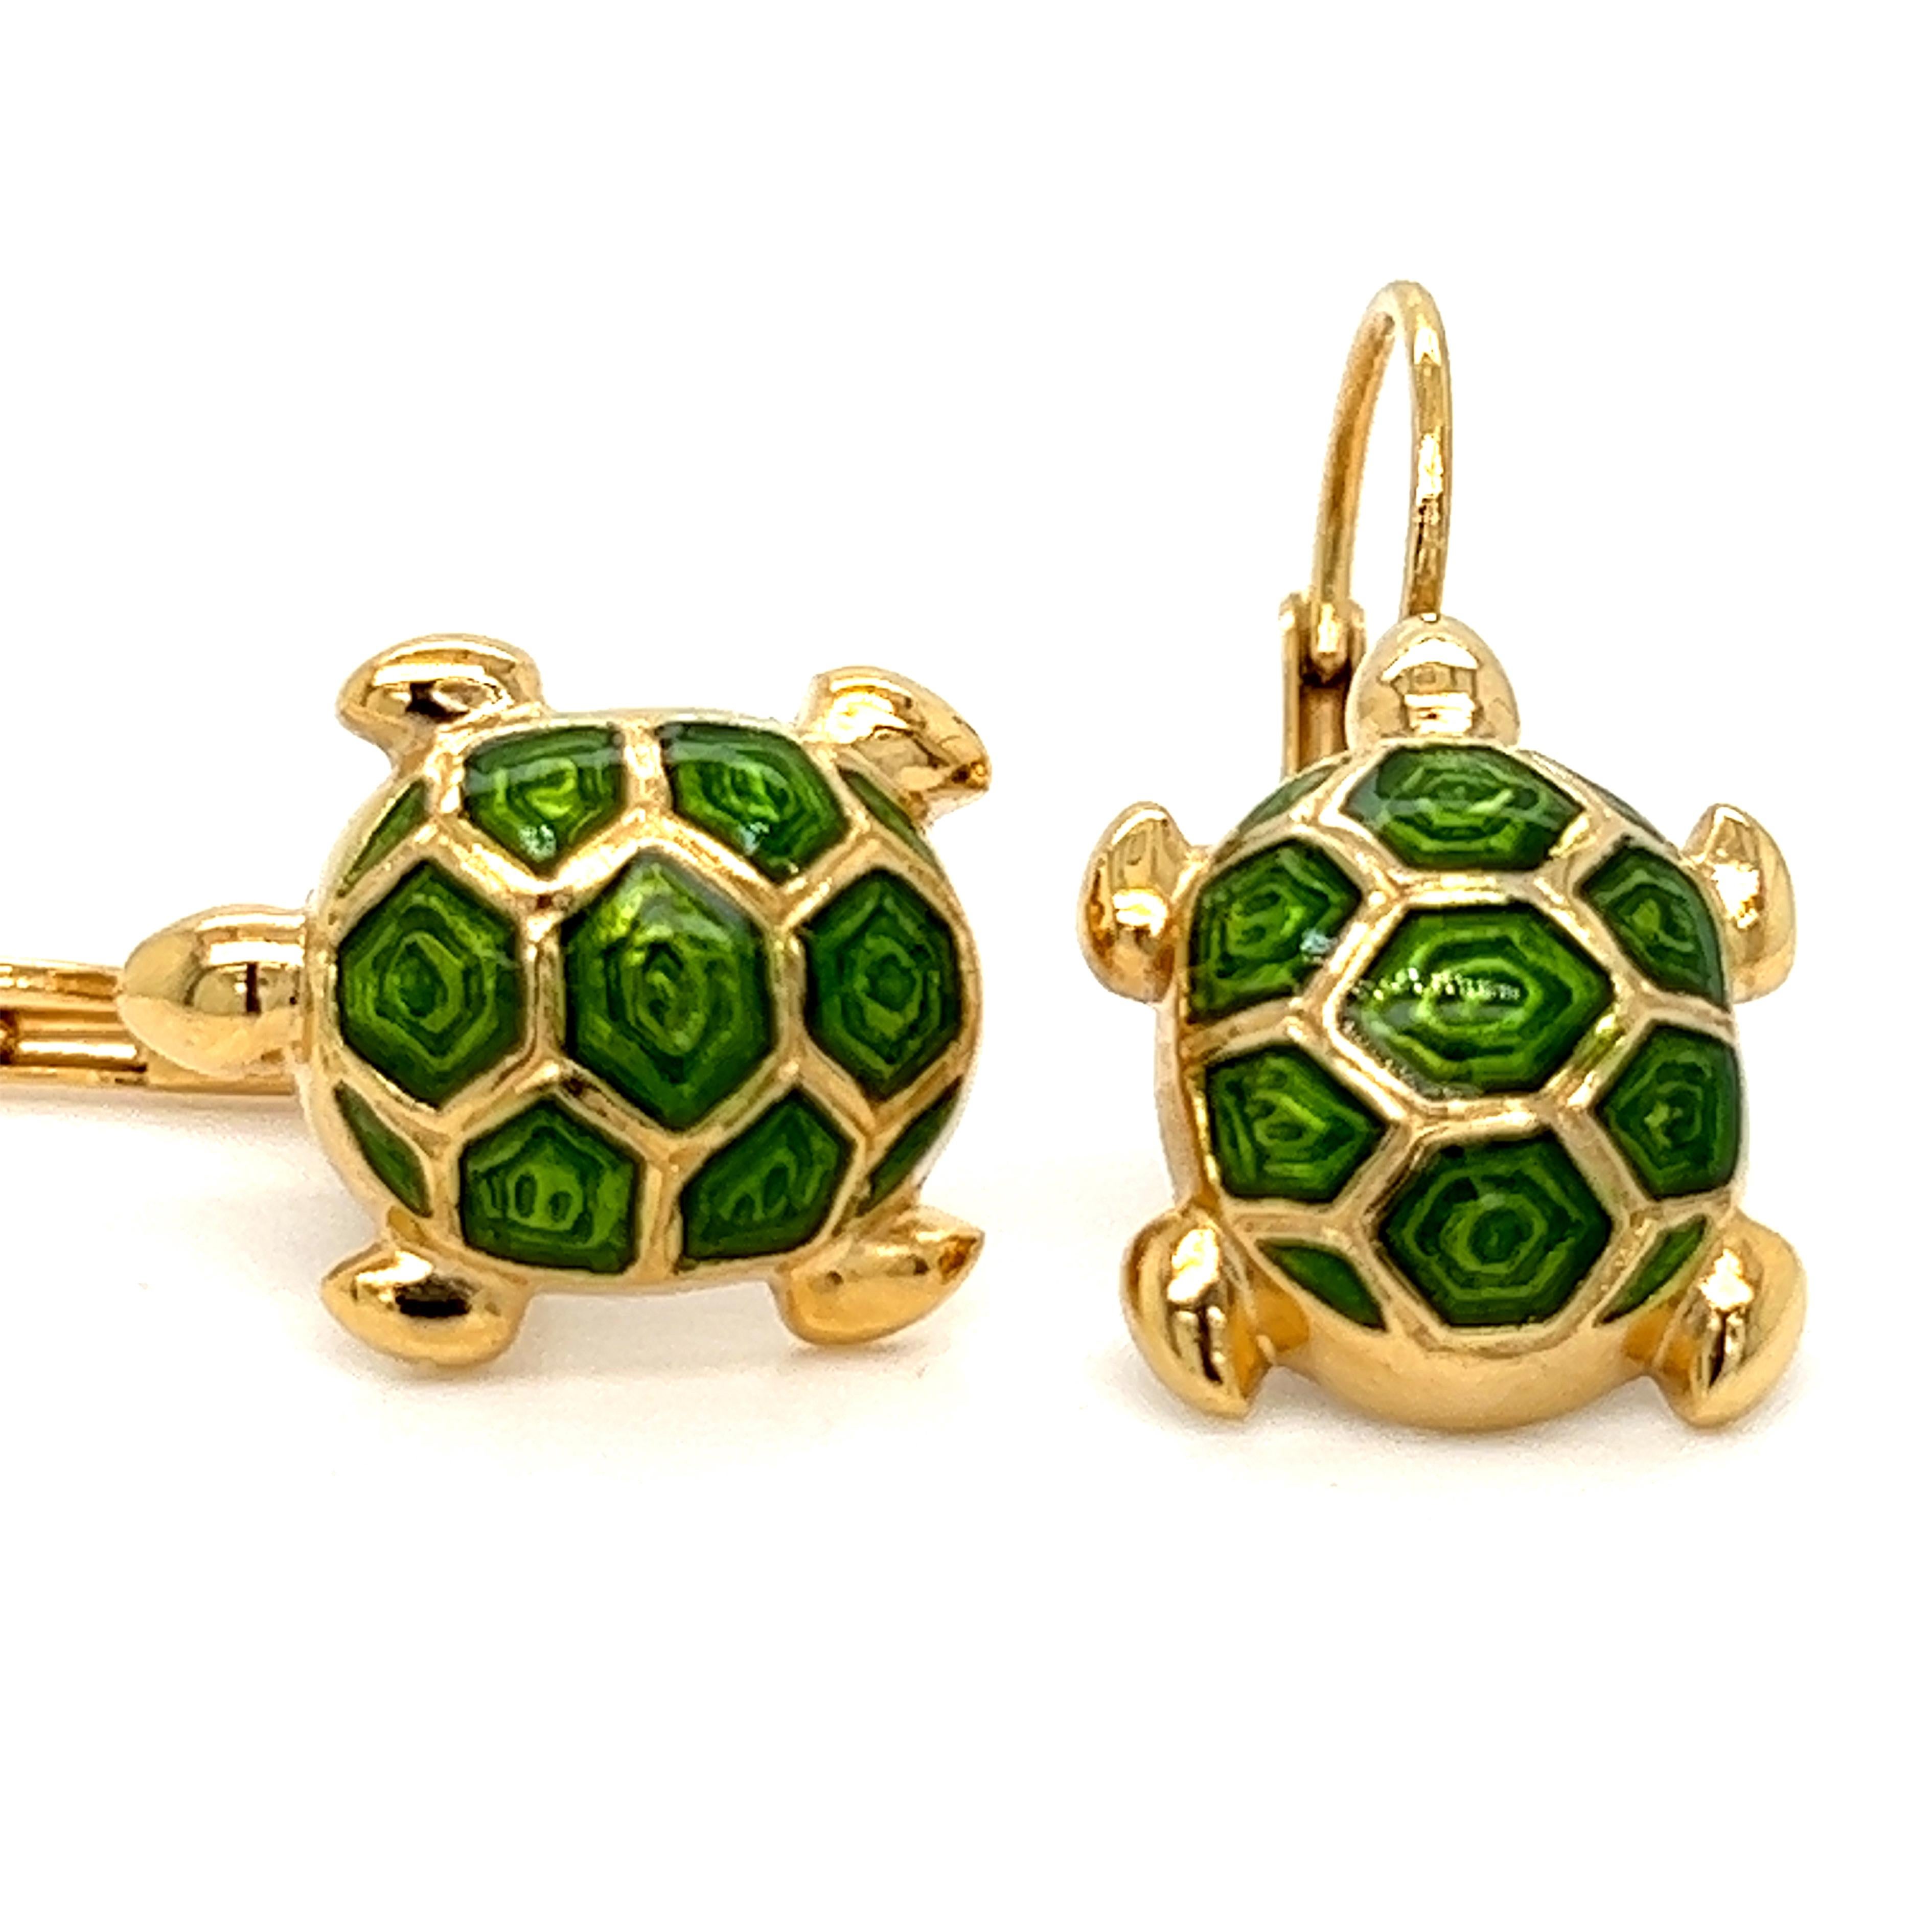 Schick, zeitlos, aber nicht traditionell Grün Hand emailliert kleine Schildkröte geformt, Sterling Silber, vergoldet Einstellung Lever-Back-Ohrringe.
In einem eleganten Tabak-Lederetui und Etui.



